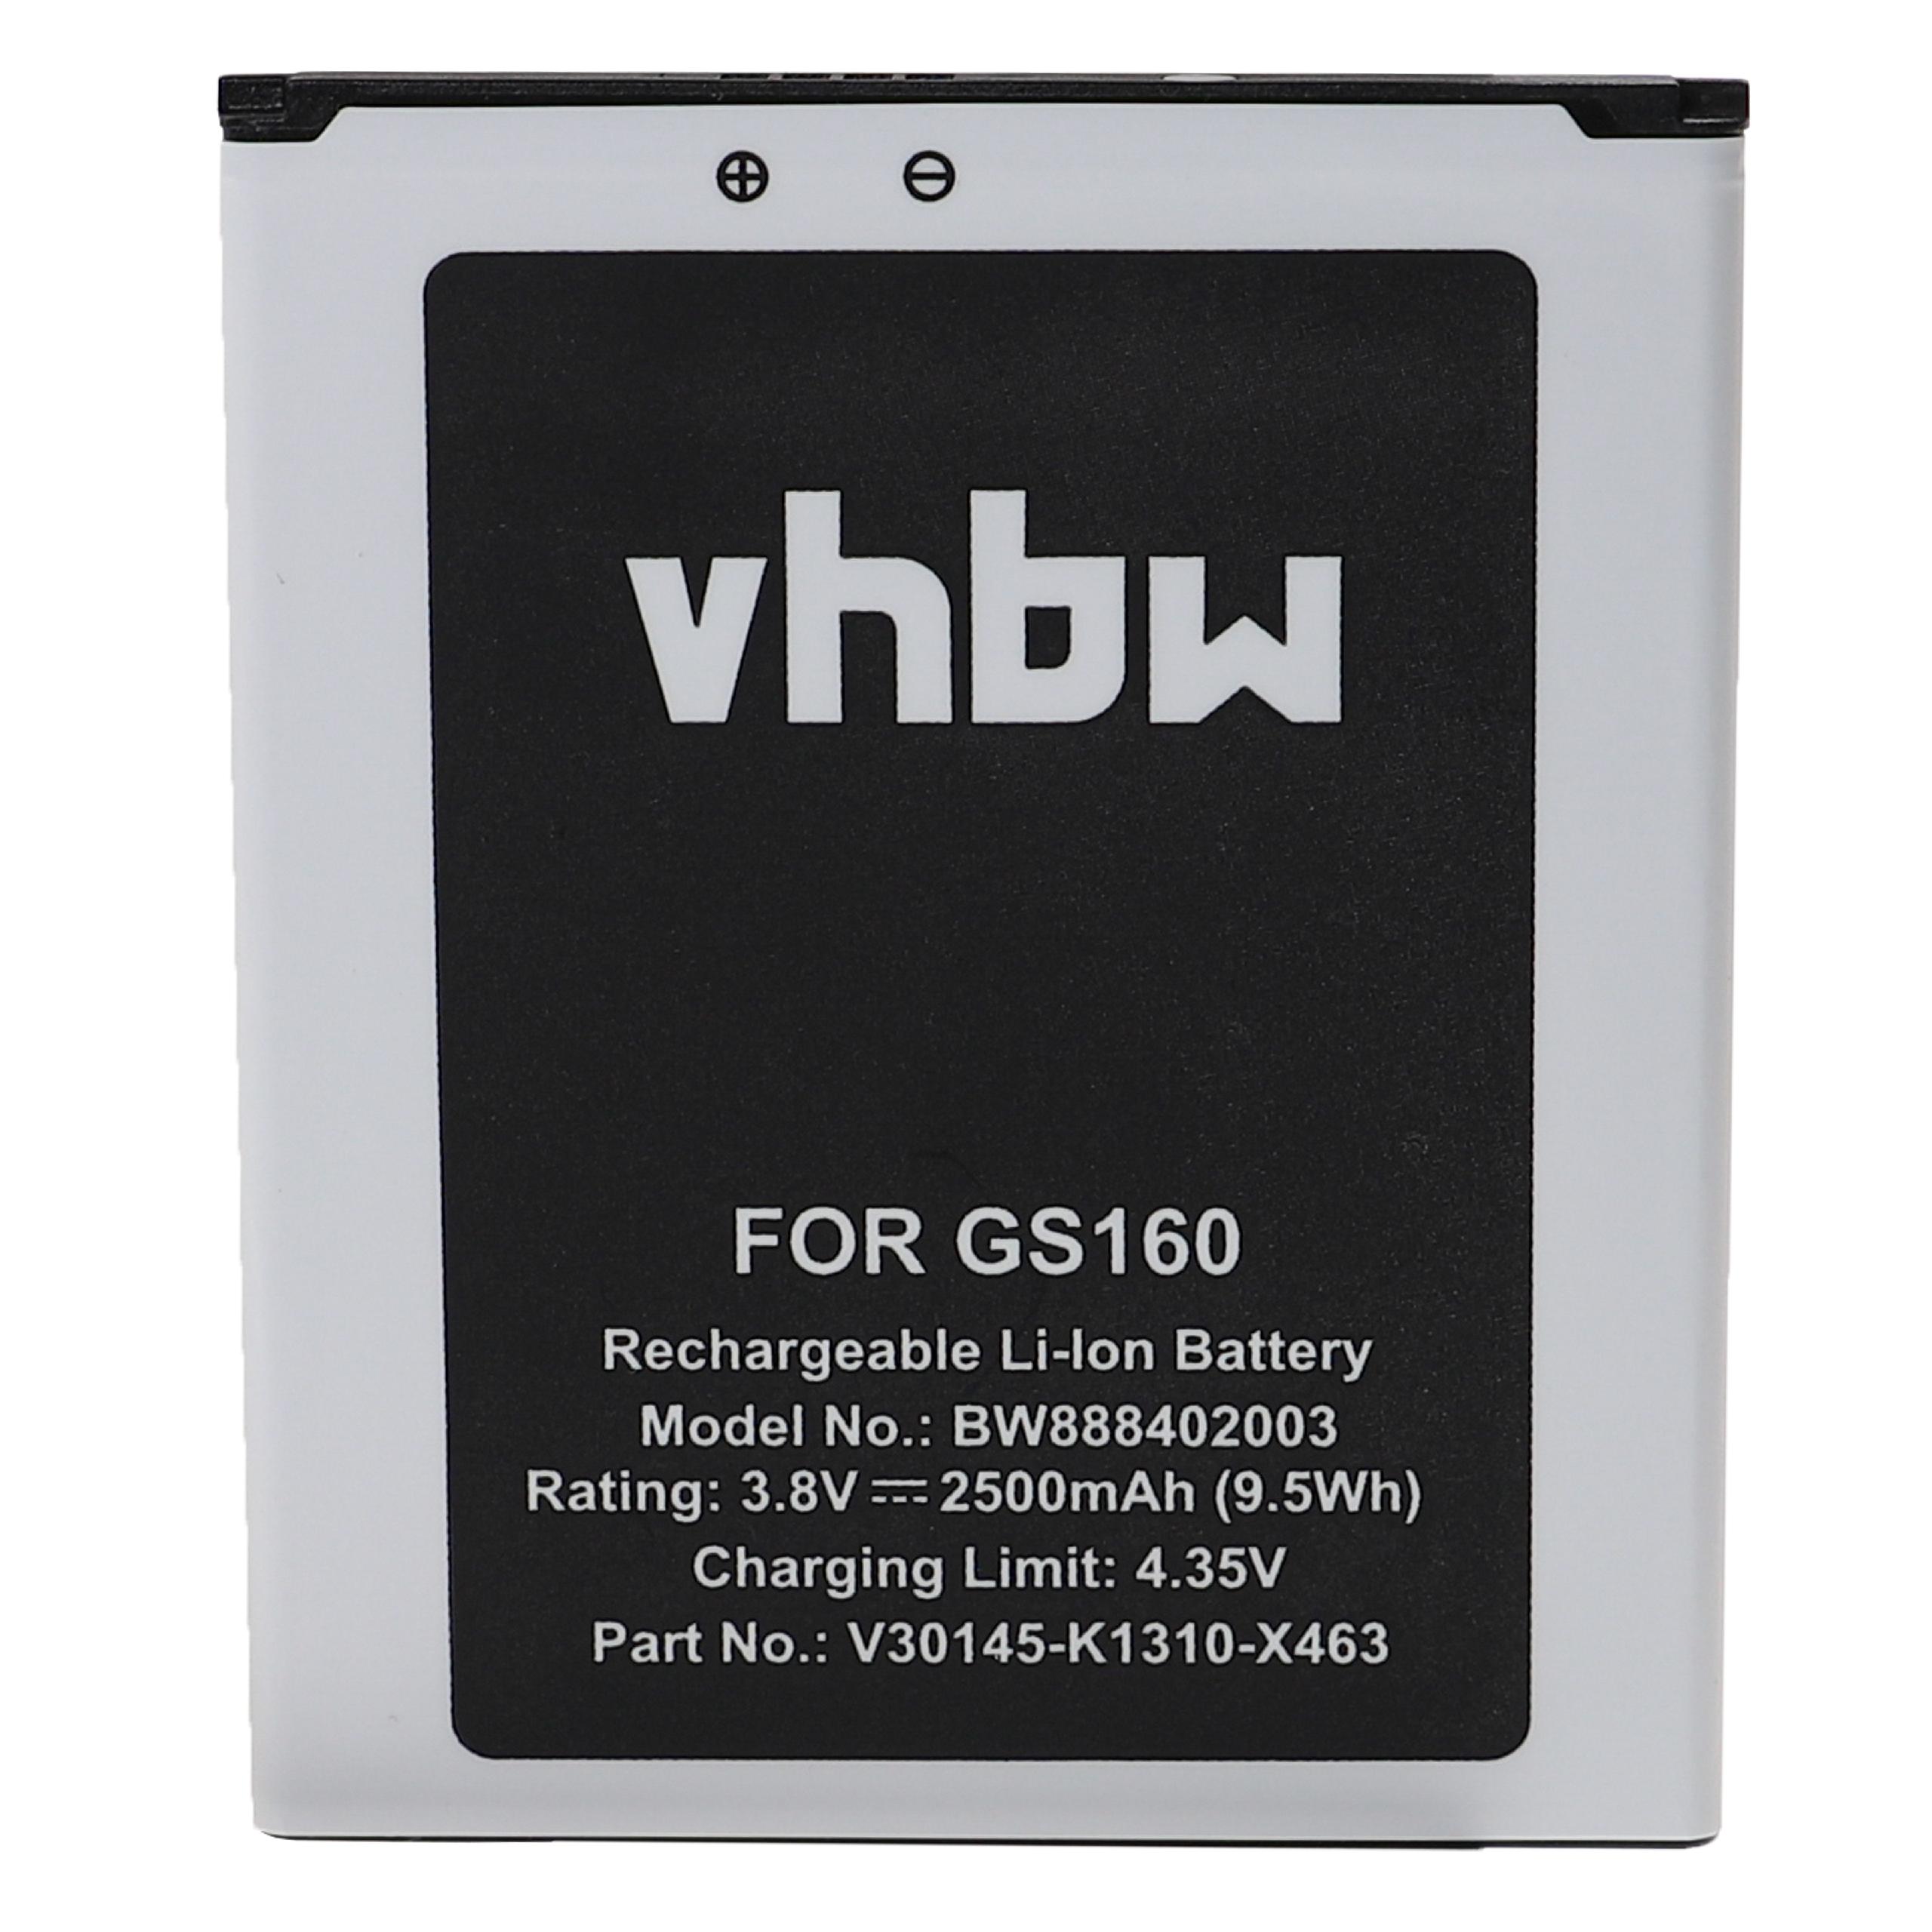 Batterie remplace Gigaset V30145-K1310-X463 pour téléphone portable - 2500mAh, 3,8V, Li-ion